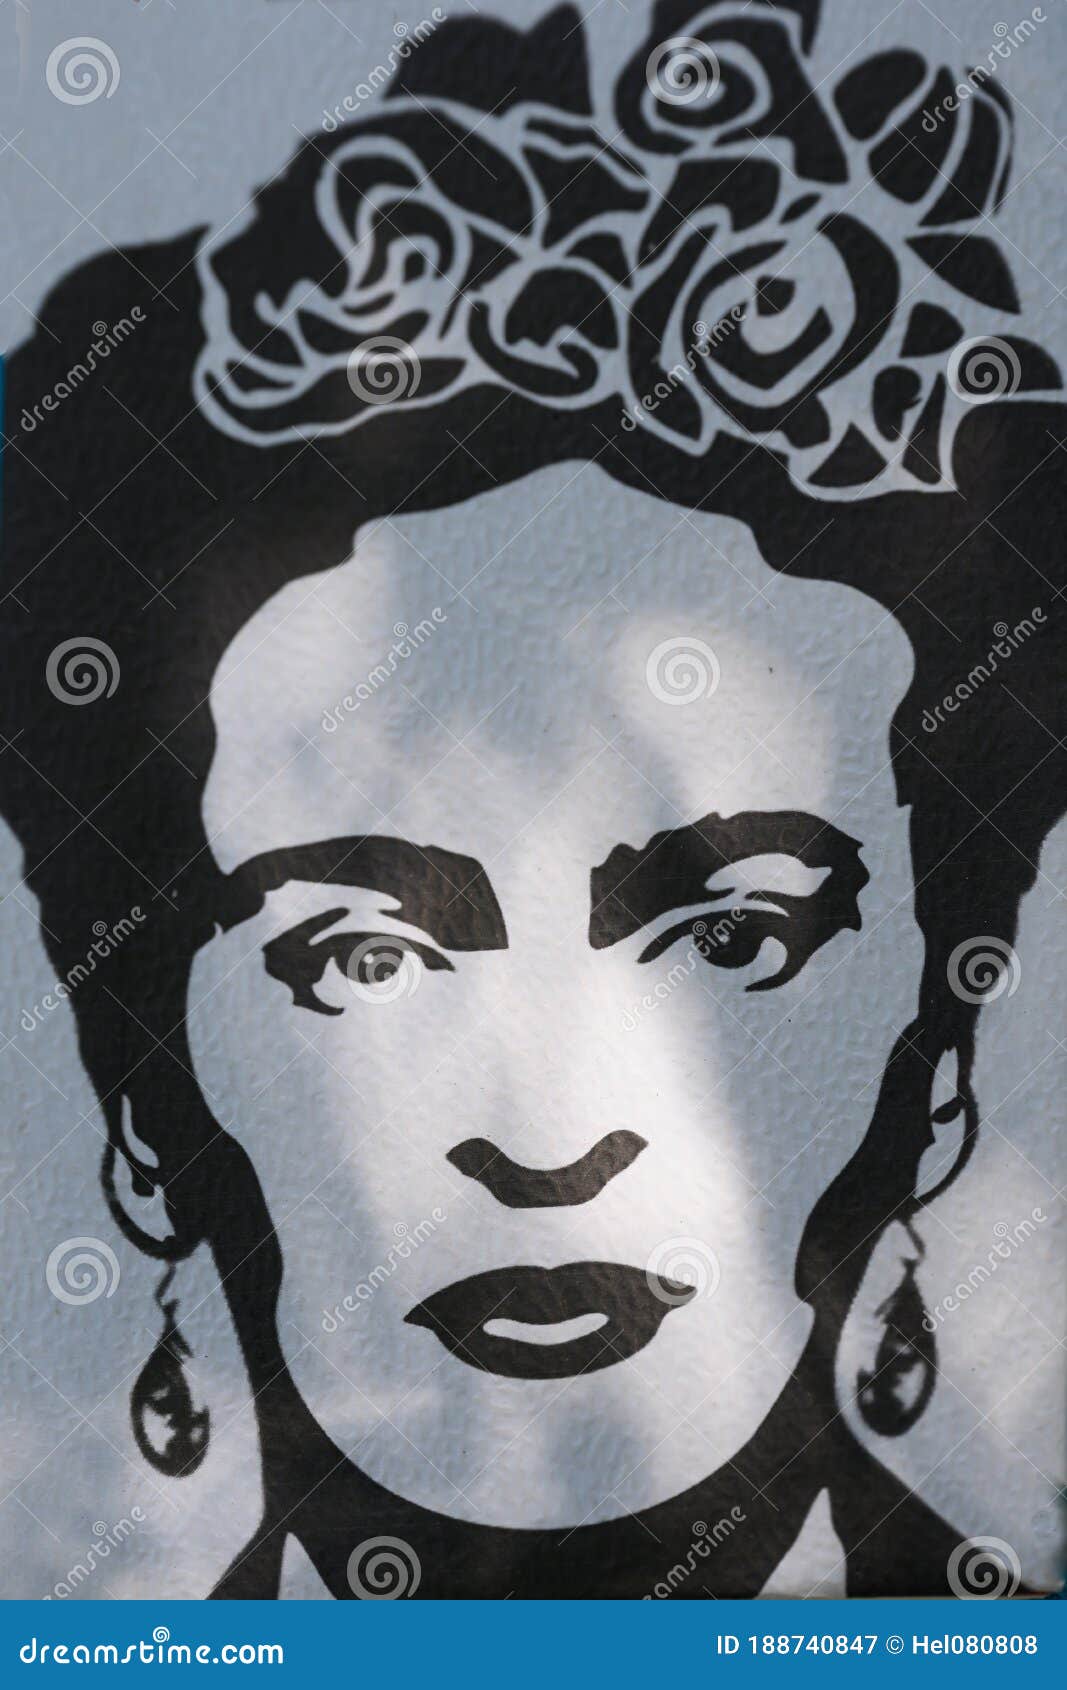 Frida Kahlo Graffitiporträt in Schwarzweiß Mit Blumen Im Haar Und Ohrringe  Gemalt Auf Mauer in Buenos Aires Argentinien Redaktionelles Stockfotografie  - Bild von gesprüht, haar: 188740847